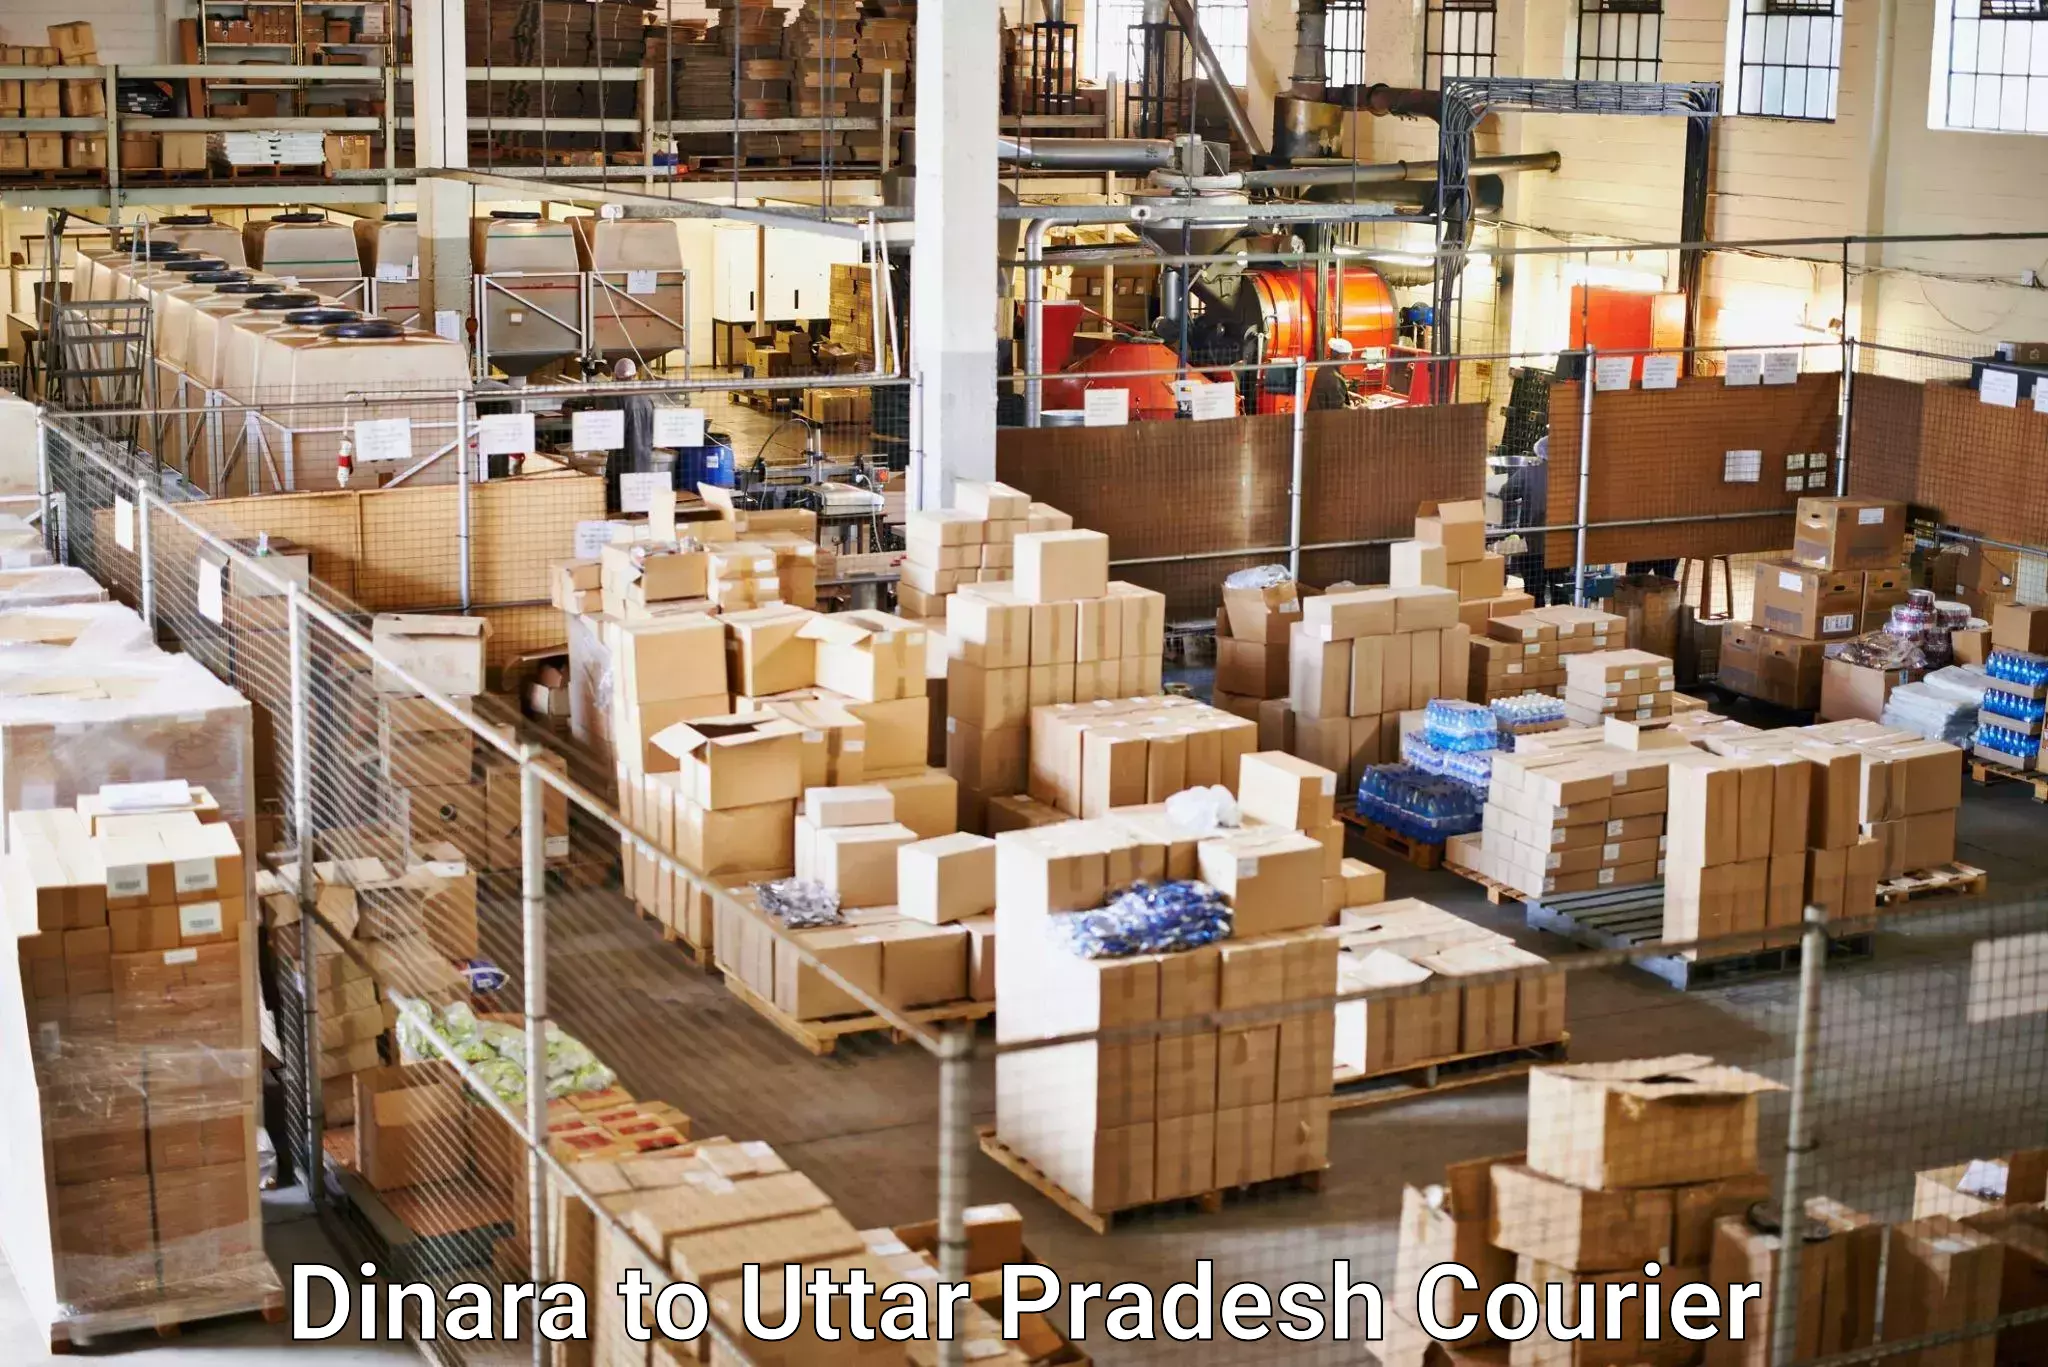 Fast-track shipping solutions Dinara to Uttar Pradesh